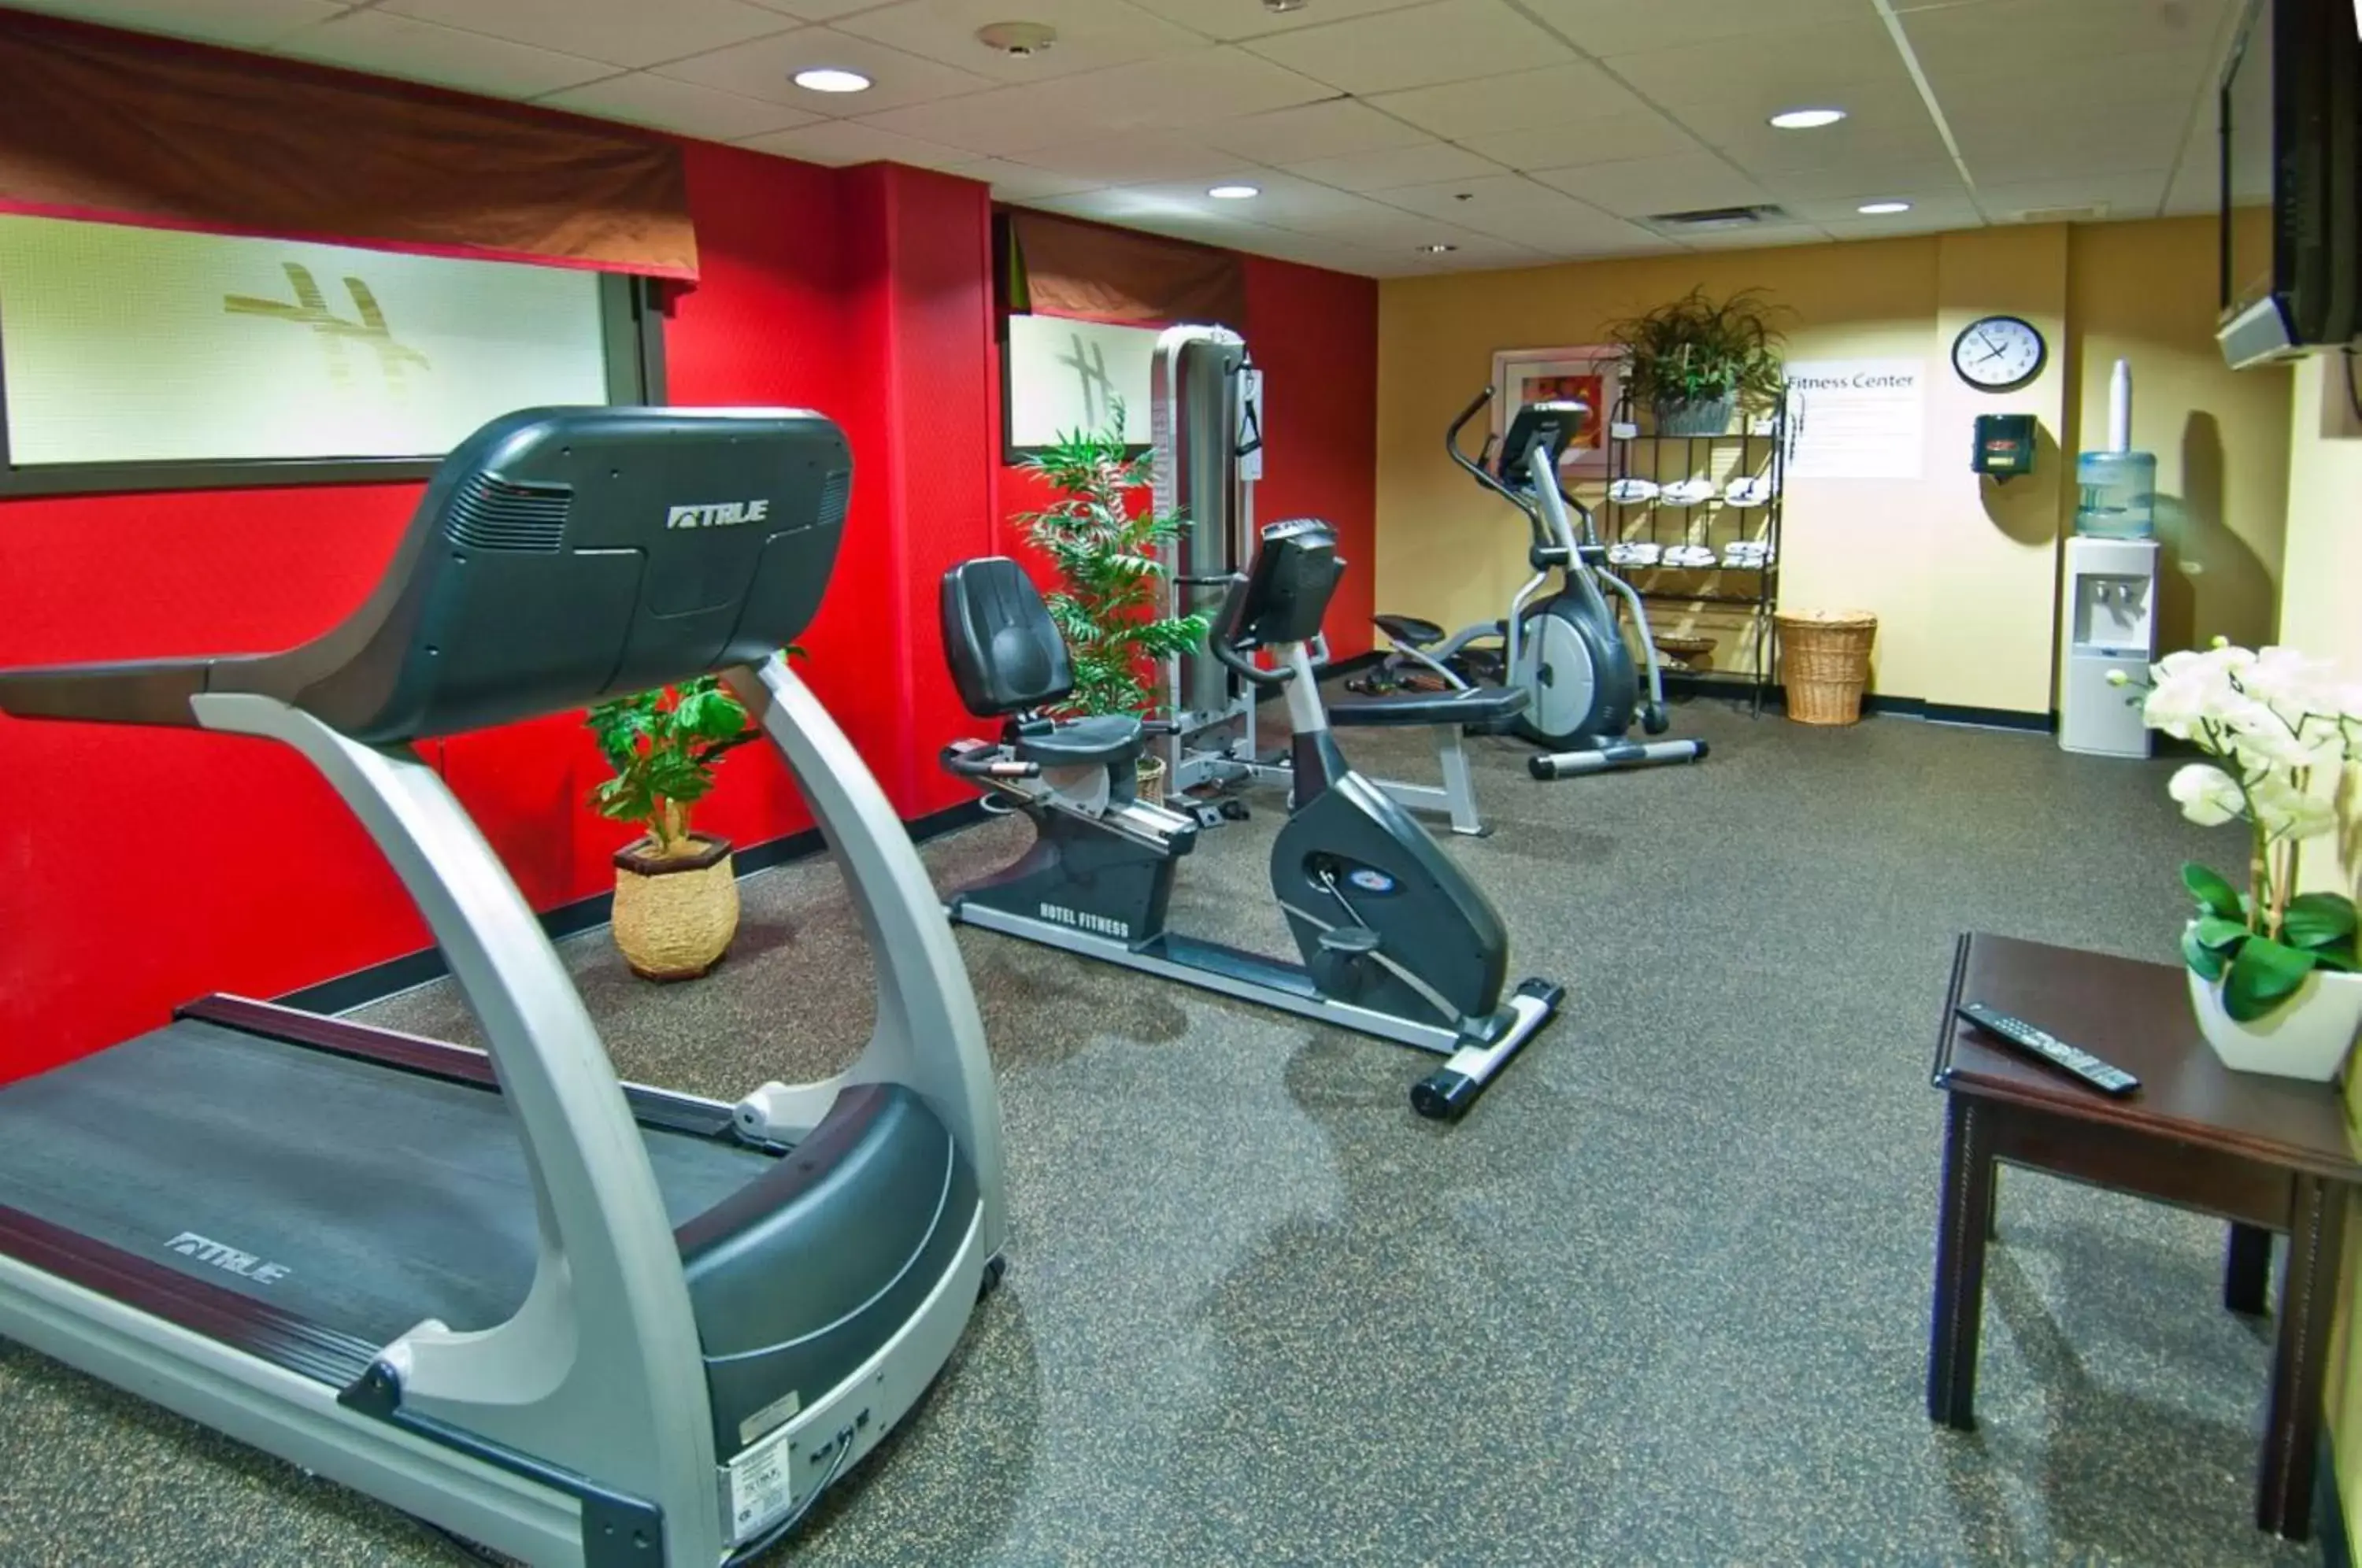 Fitness centre/facilities, Fitness Center/Facilities in Holiday Inn Vicksburg, an IHG Hotel